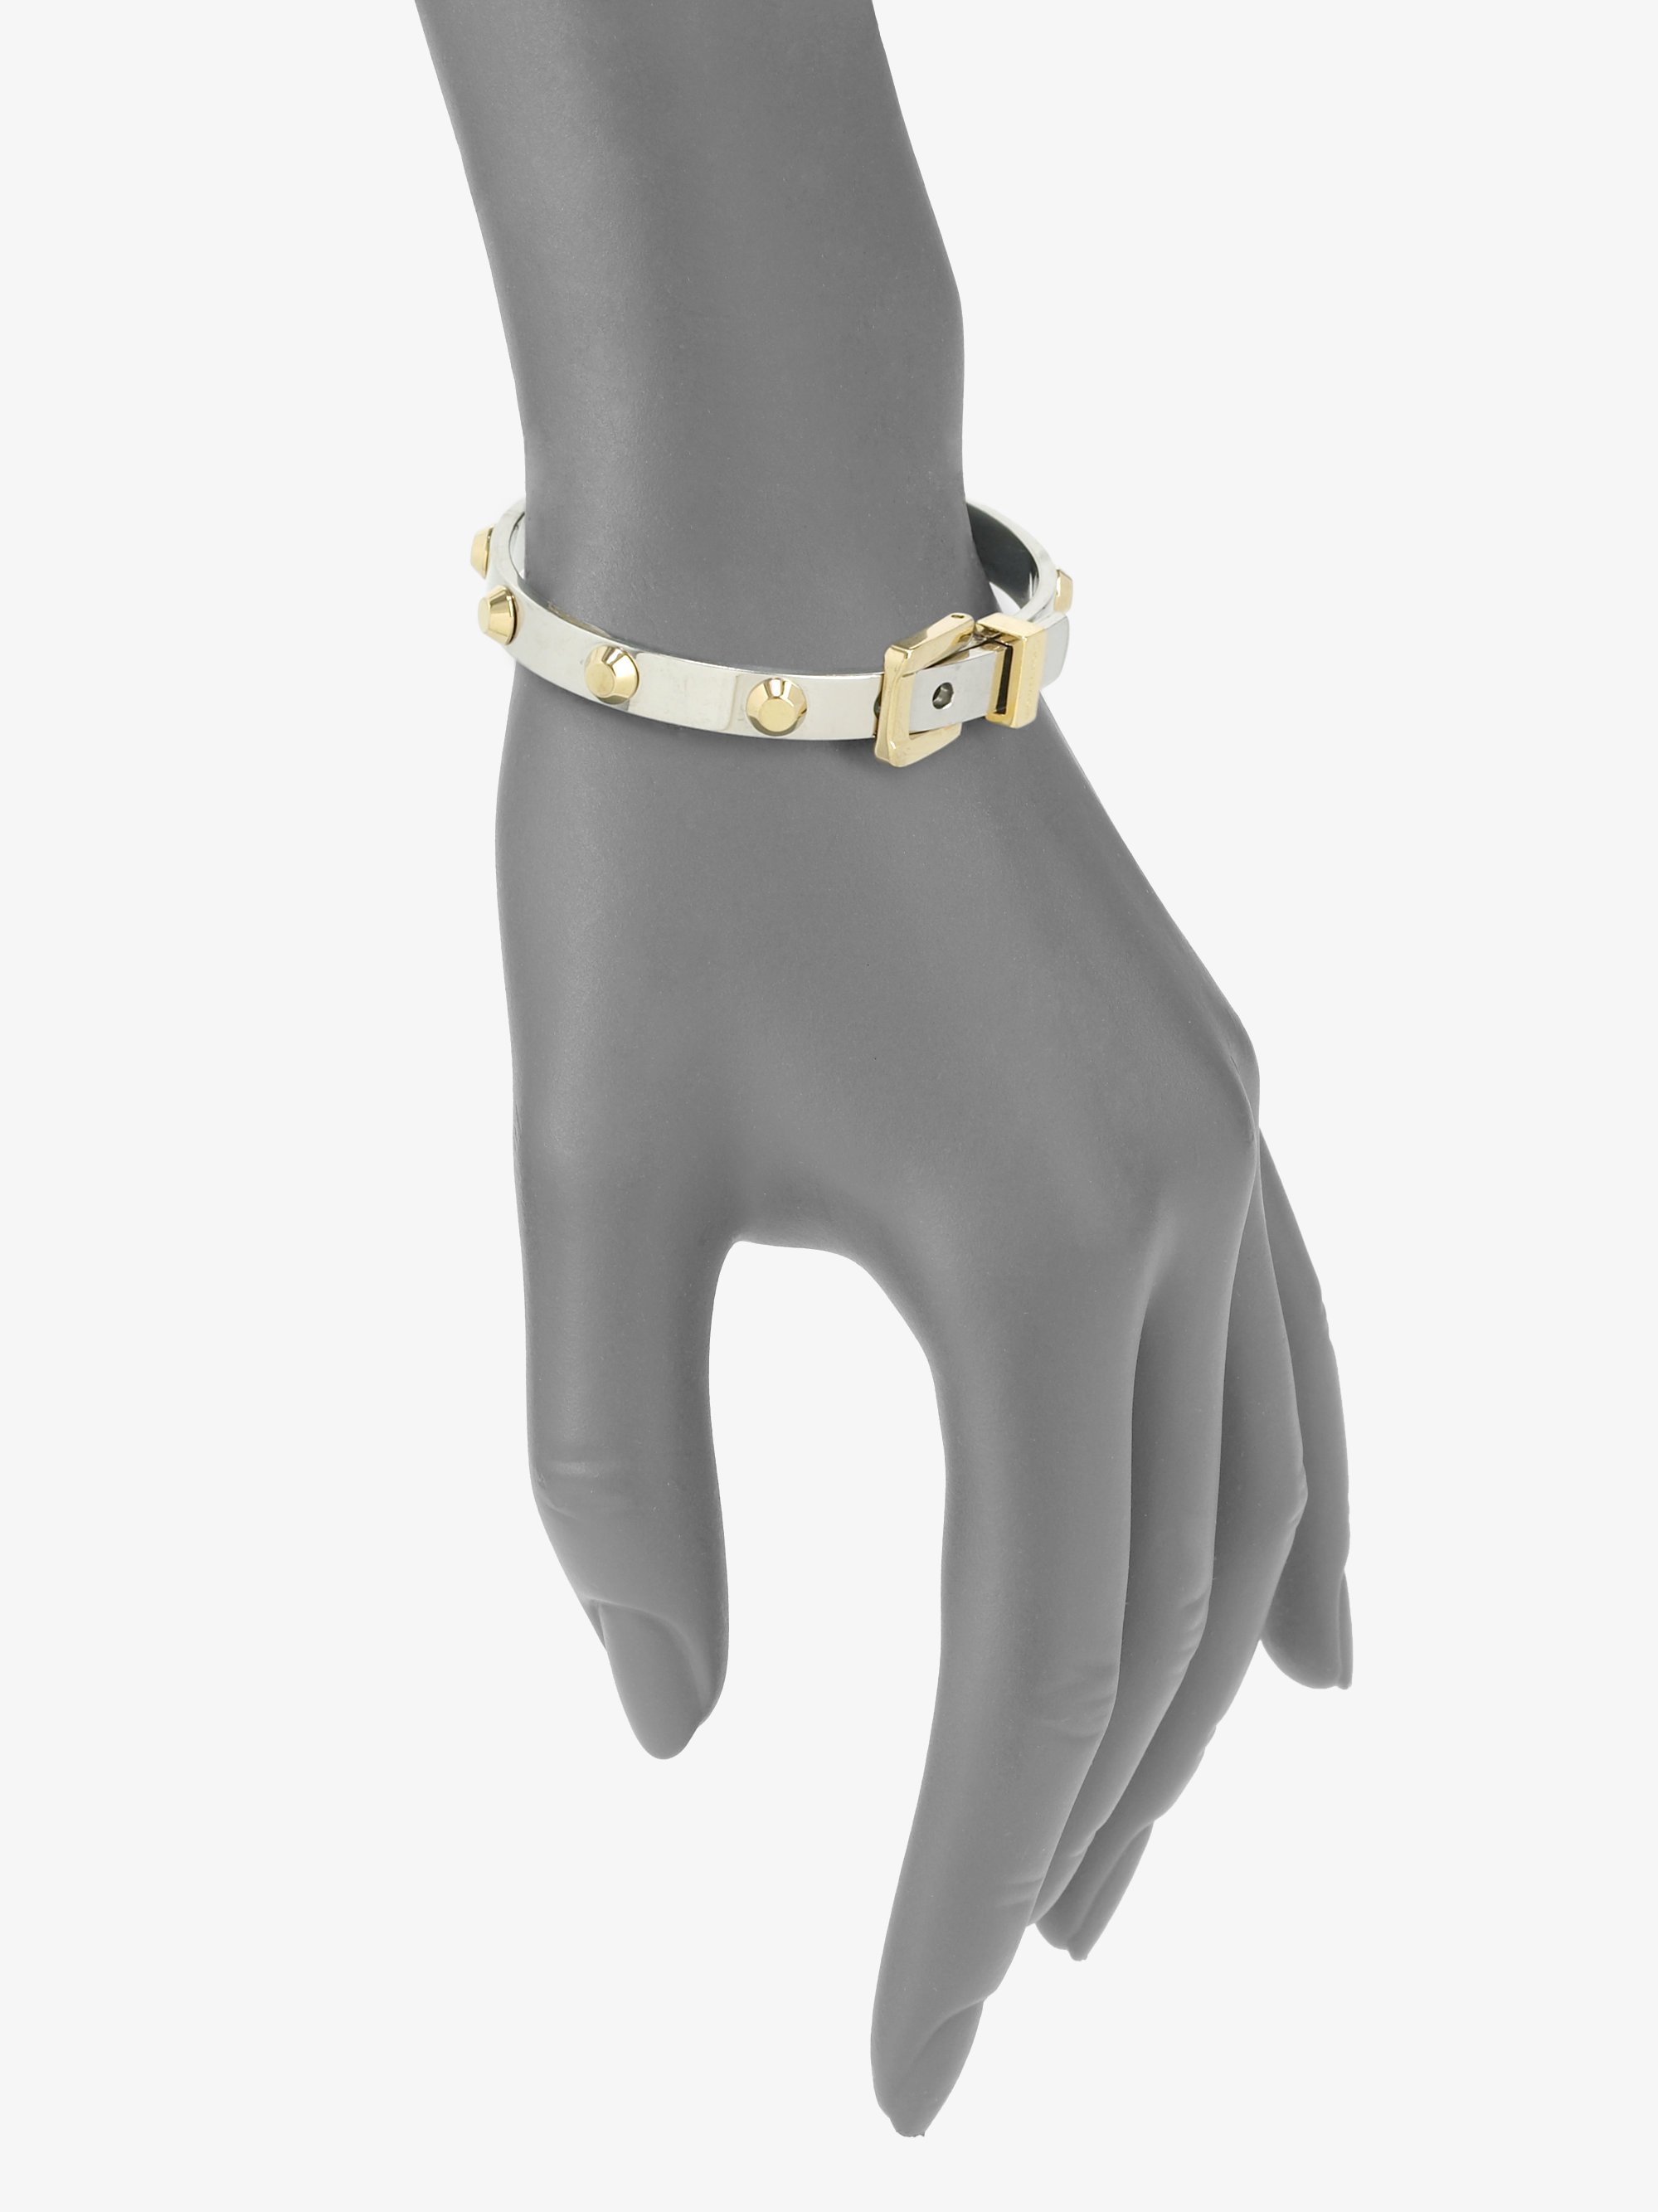 Michael Kors GoldTone Belt Buckle Ring Adorable Size 6  eBay